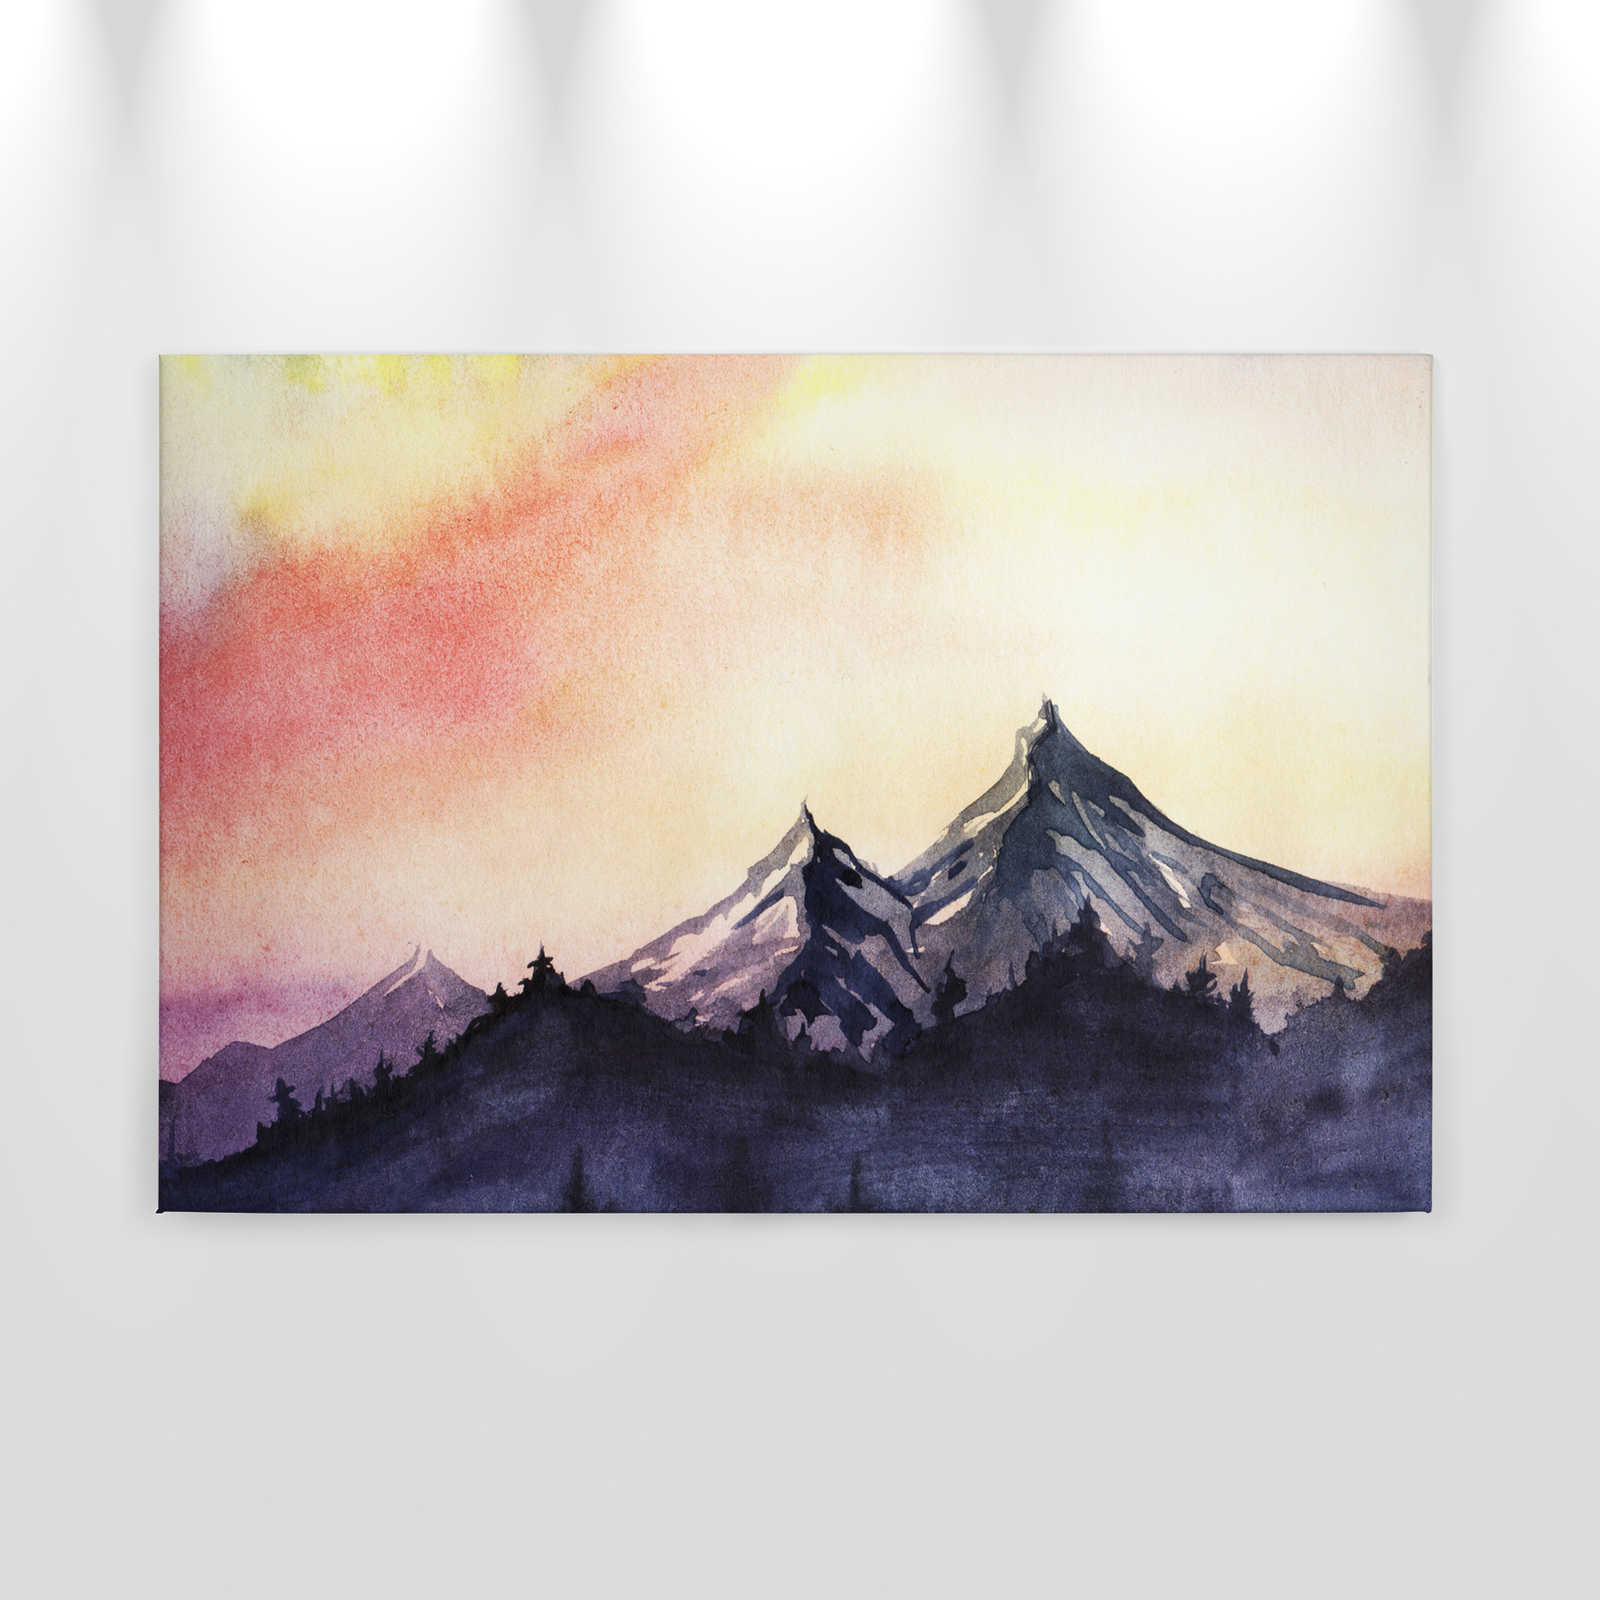             Toile avec paysage de montagne de style aquarelle - 0,90 m x 0,60 m
        